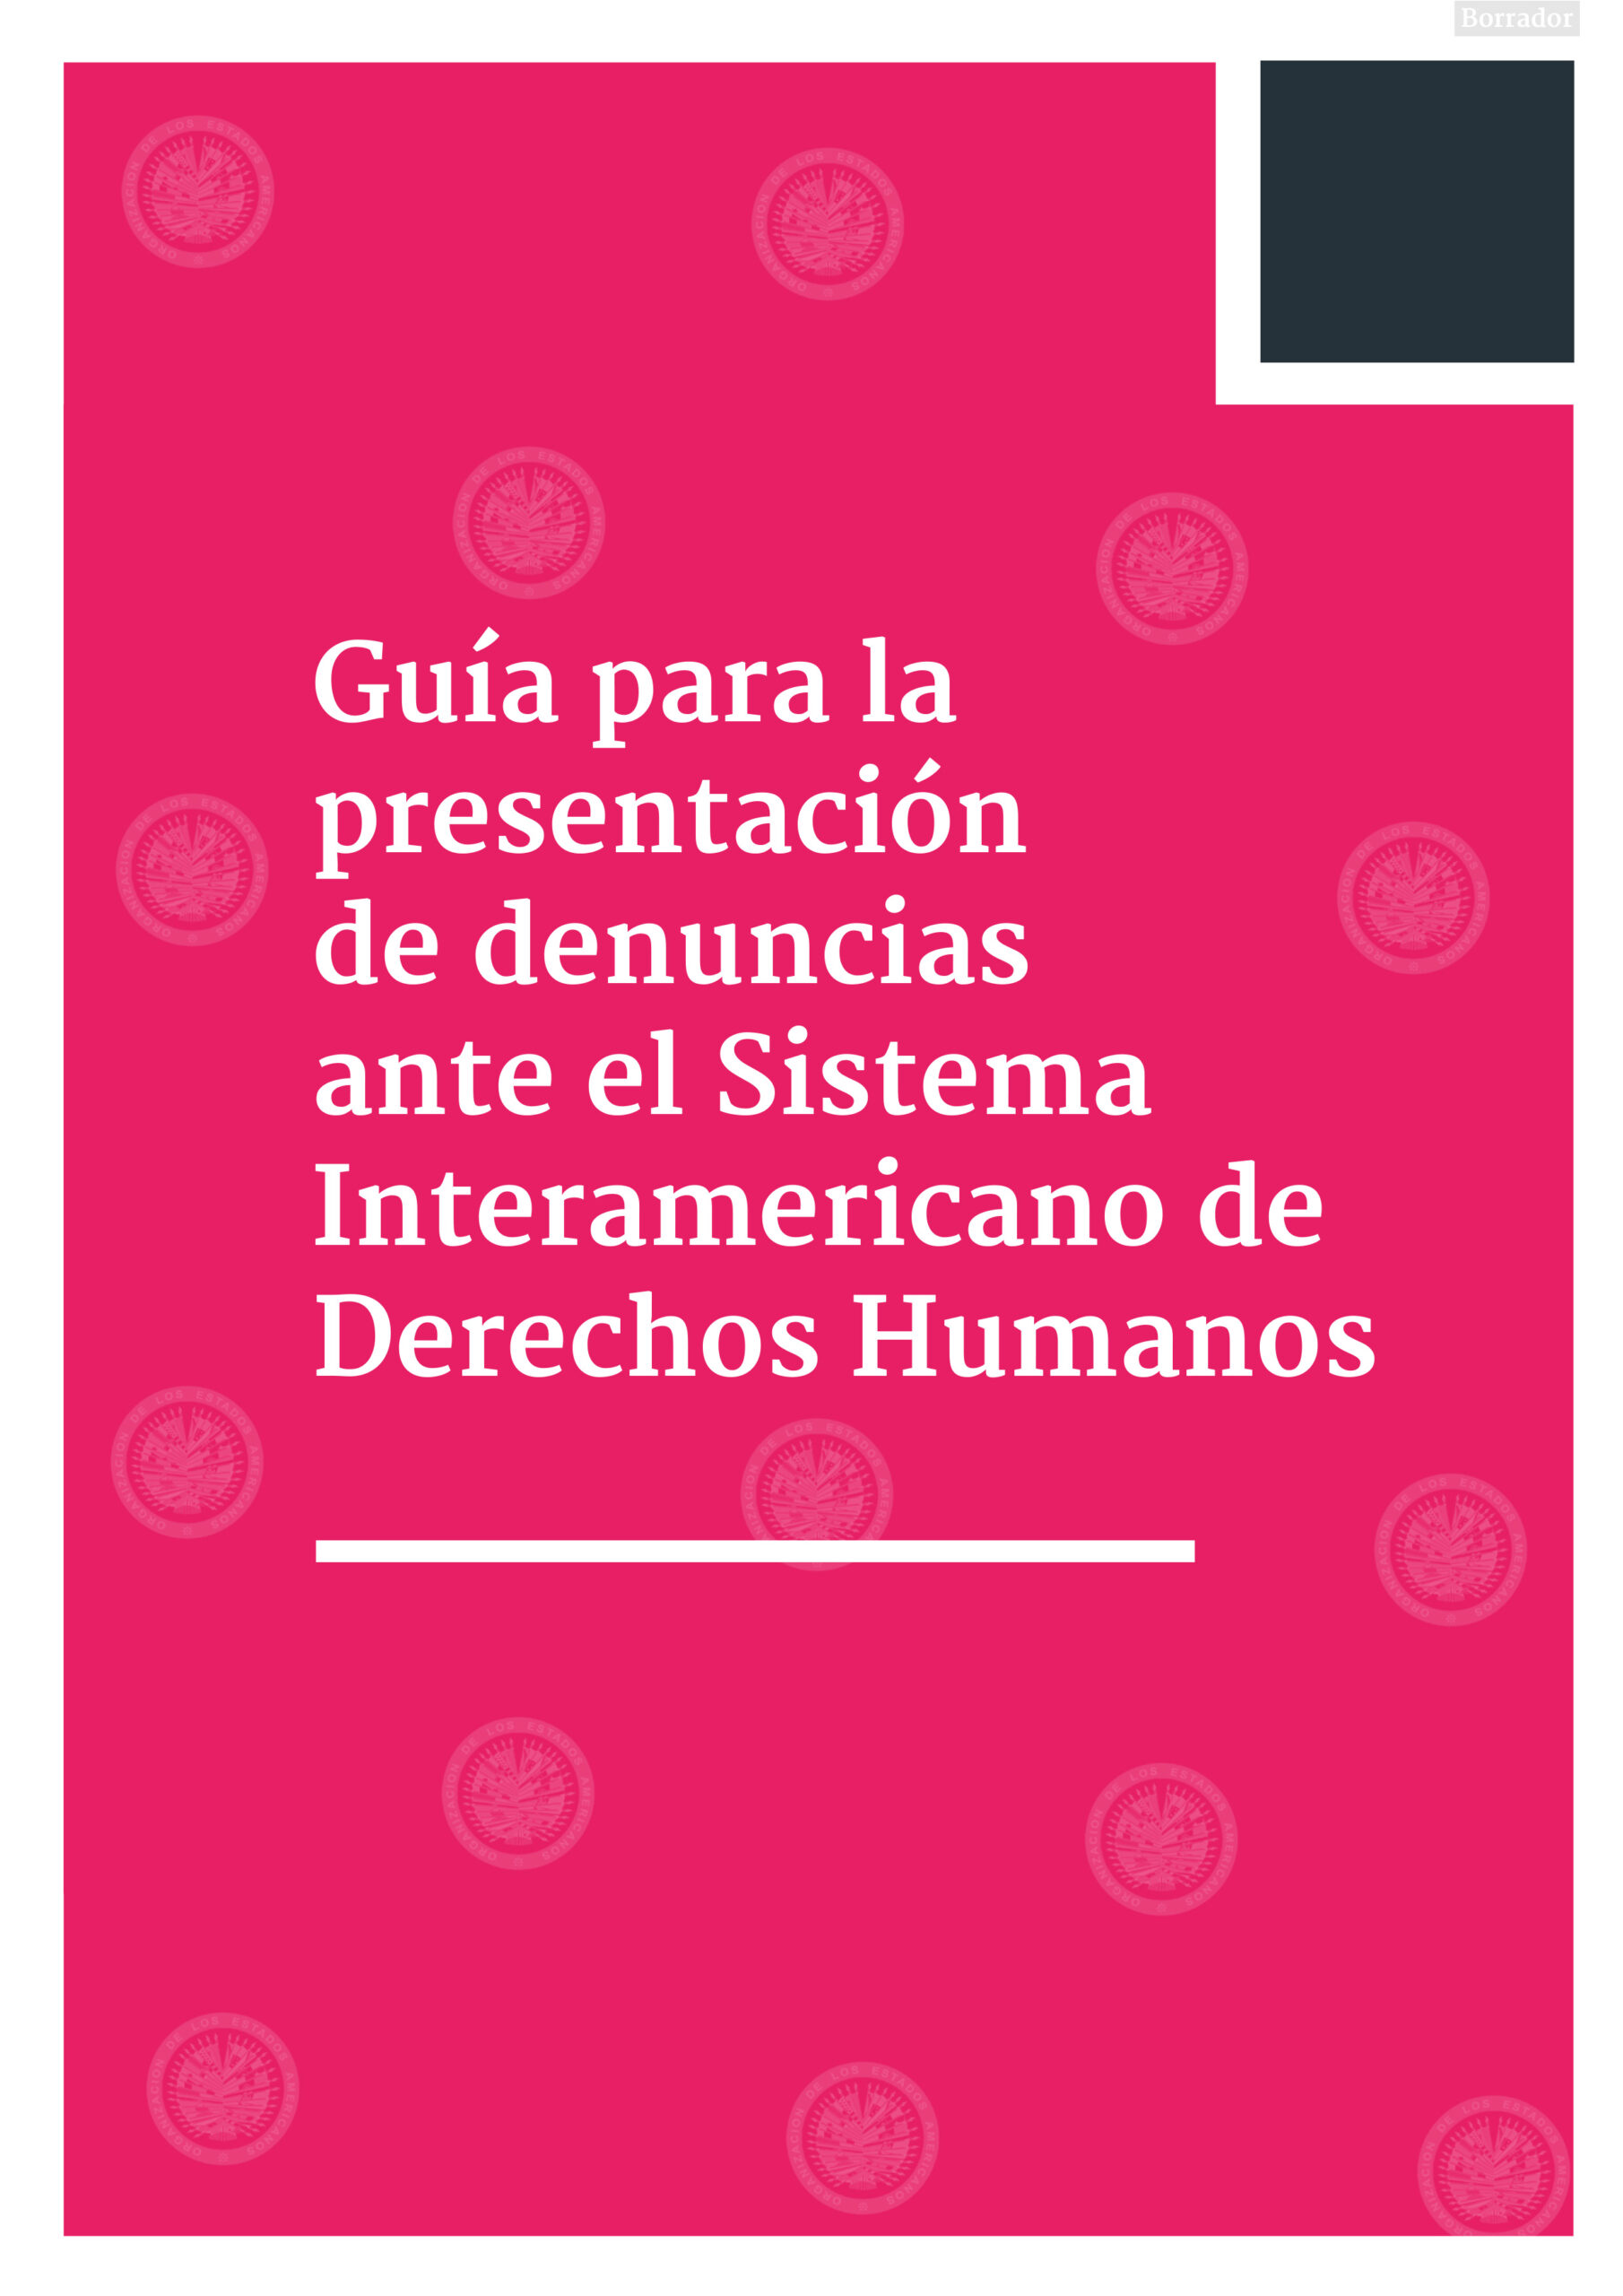 Guía para la presentación de denuncias ante el Sistema Interamericano de Derechos Humanos